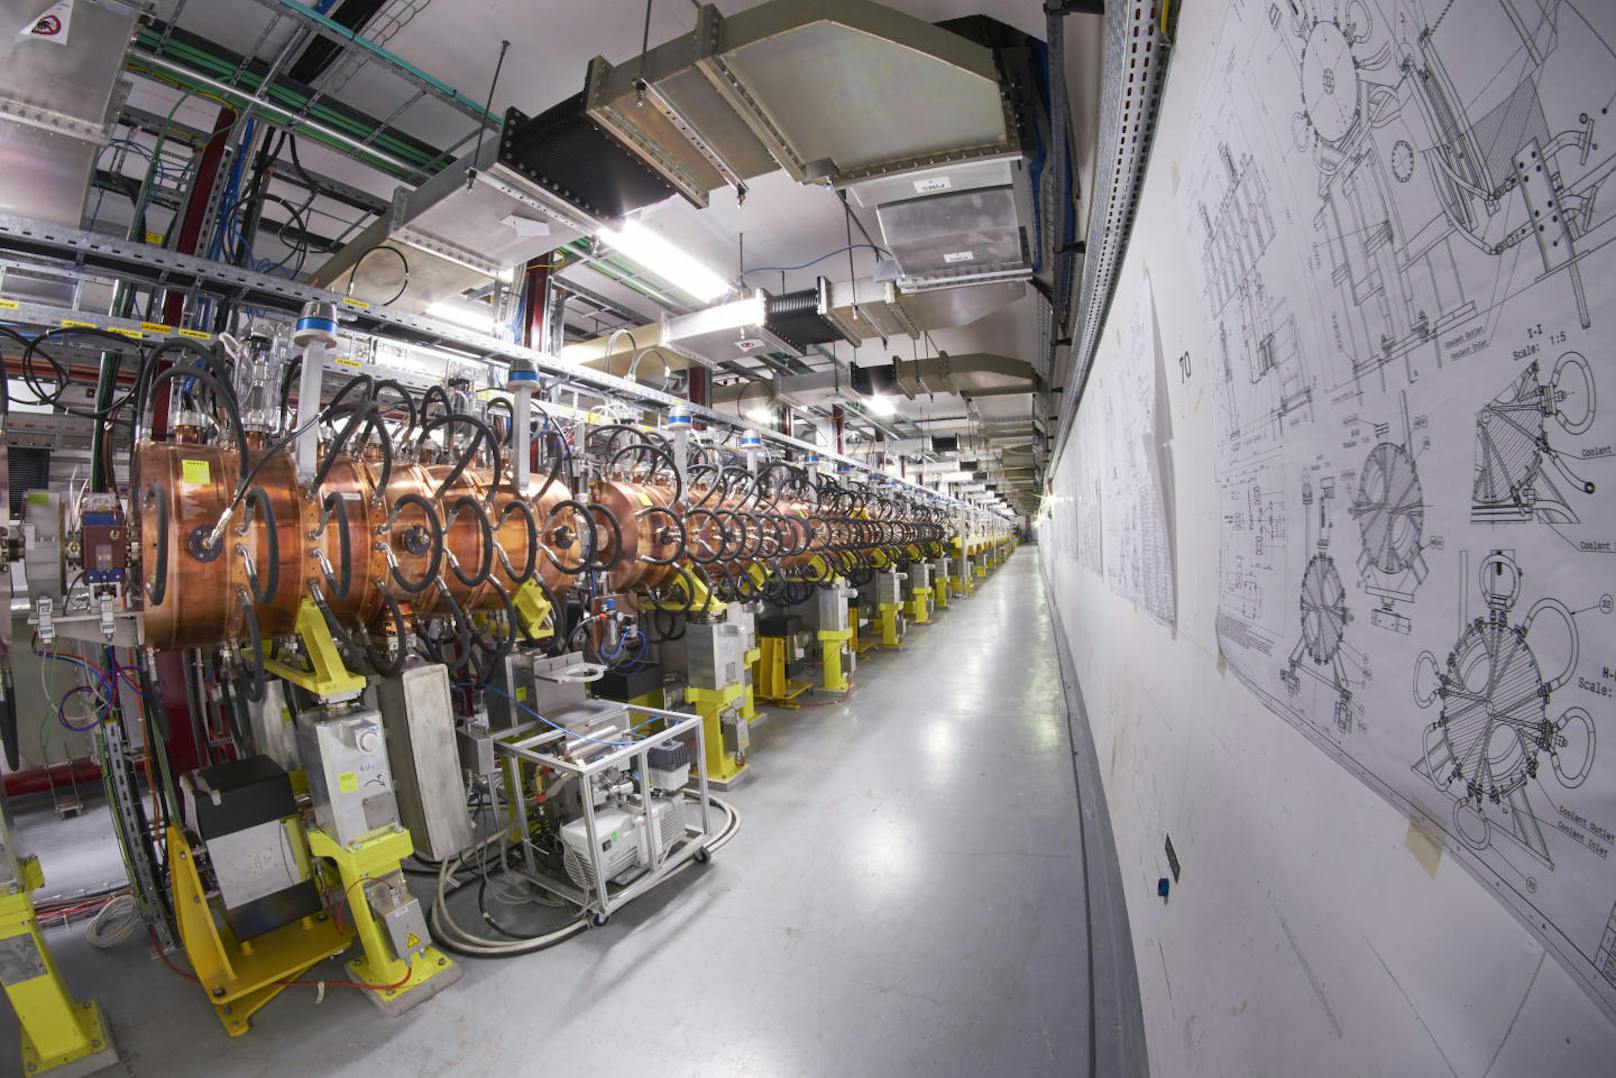 Bis 2021 soll der Protonenstrahl im LHC noch höhere Energien erreichen und damit neue Erkenntnisse über das Higgs-Teilchen und vielleicht auch Hinweise auf eine neue Physik ermöglichen.